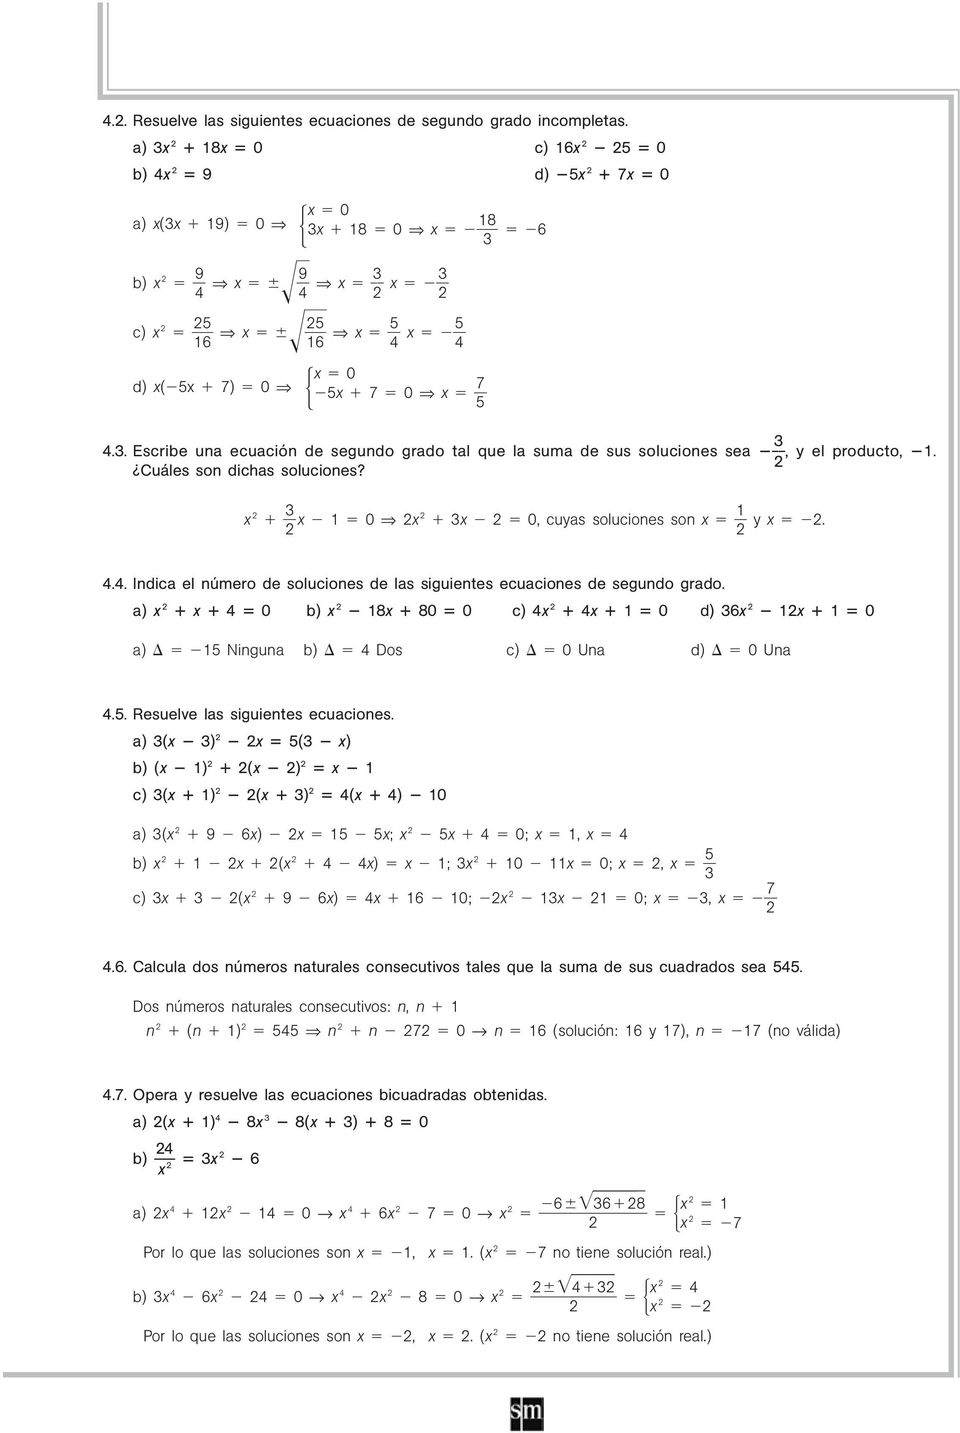 .. Indica el número de soluciones de las siguientes ecuaciones de segundo grado. a) 0 b) 8 80 0 c) 0 d) 6 0 a) 5 Ninguna b) Dos c) 0 Una d) 0 Una.5. Resuelve las siguientes ecuaciones.